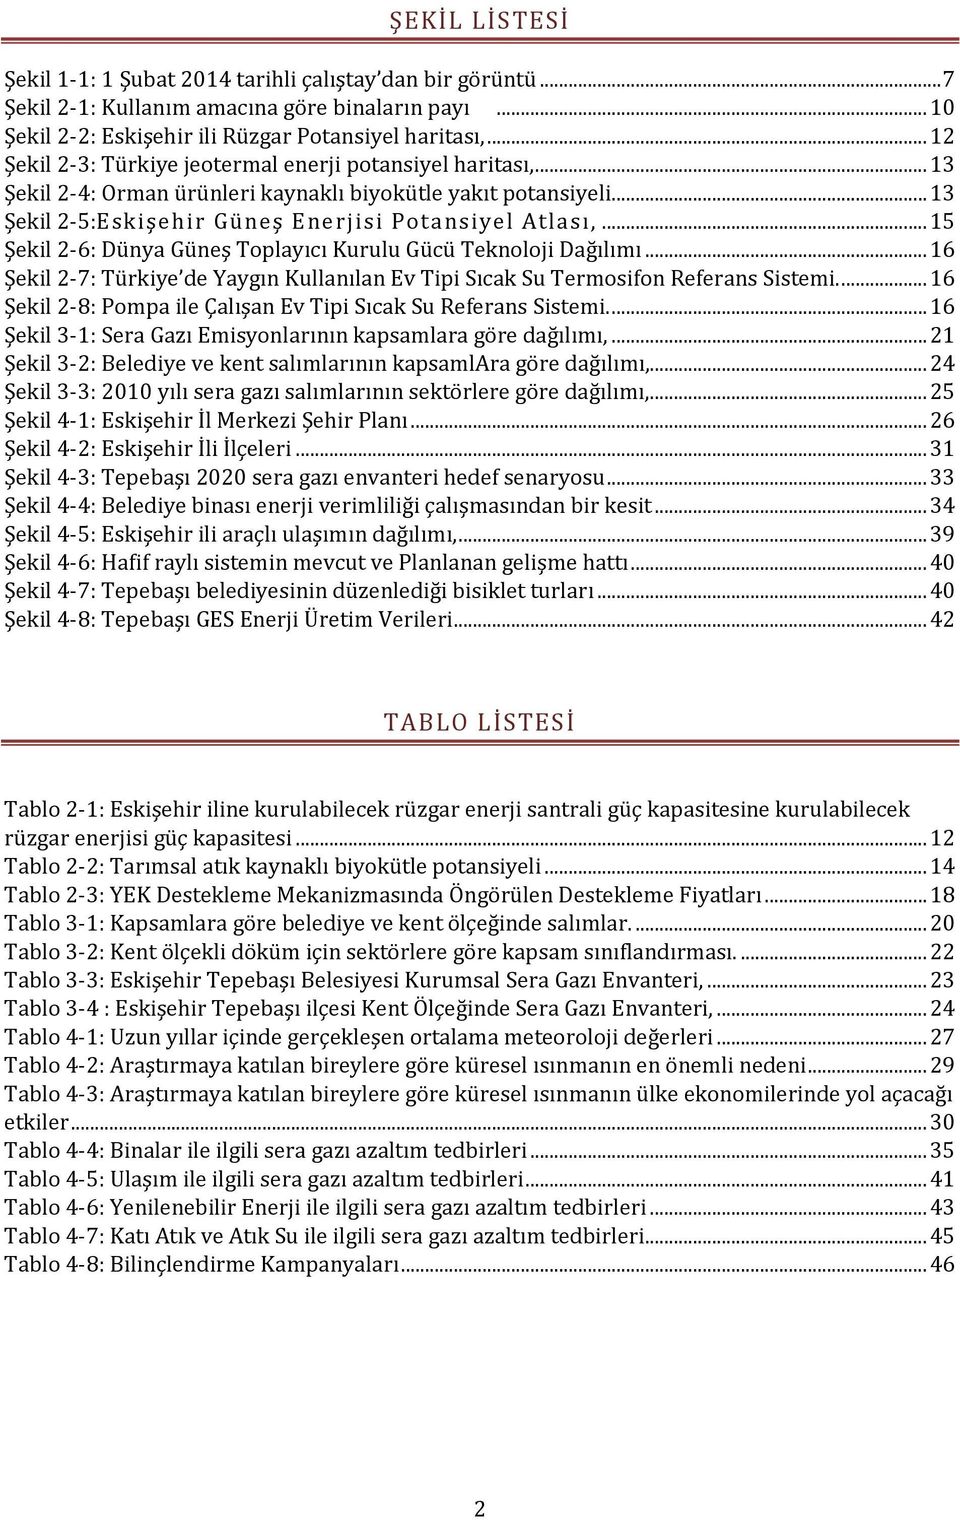 .. 15 Şekil 2-6: Dünya Güneş Toplayıcı Kurulu Gücü Teknoloji Dağılımı... 16 Şekil 2-7: Türkiye de Yaygın Kullanılan Ev Tipi Sıcak Su Termosifon Referans Sistemi.